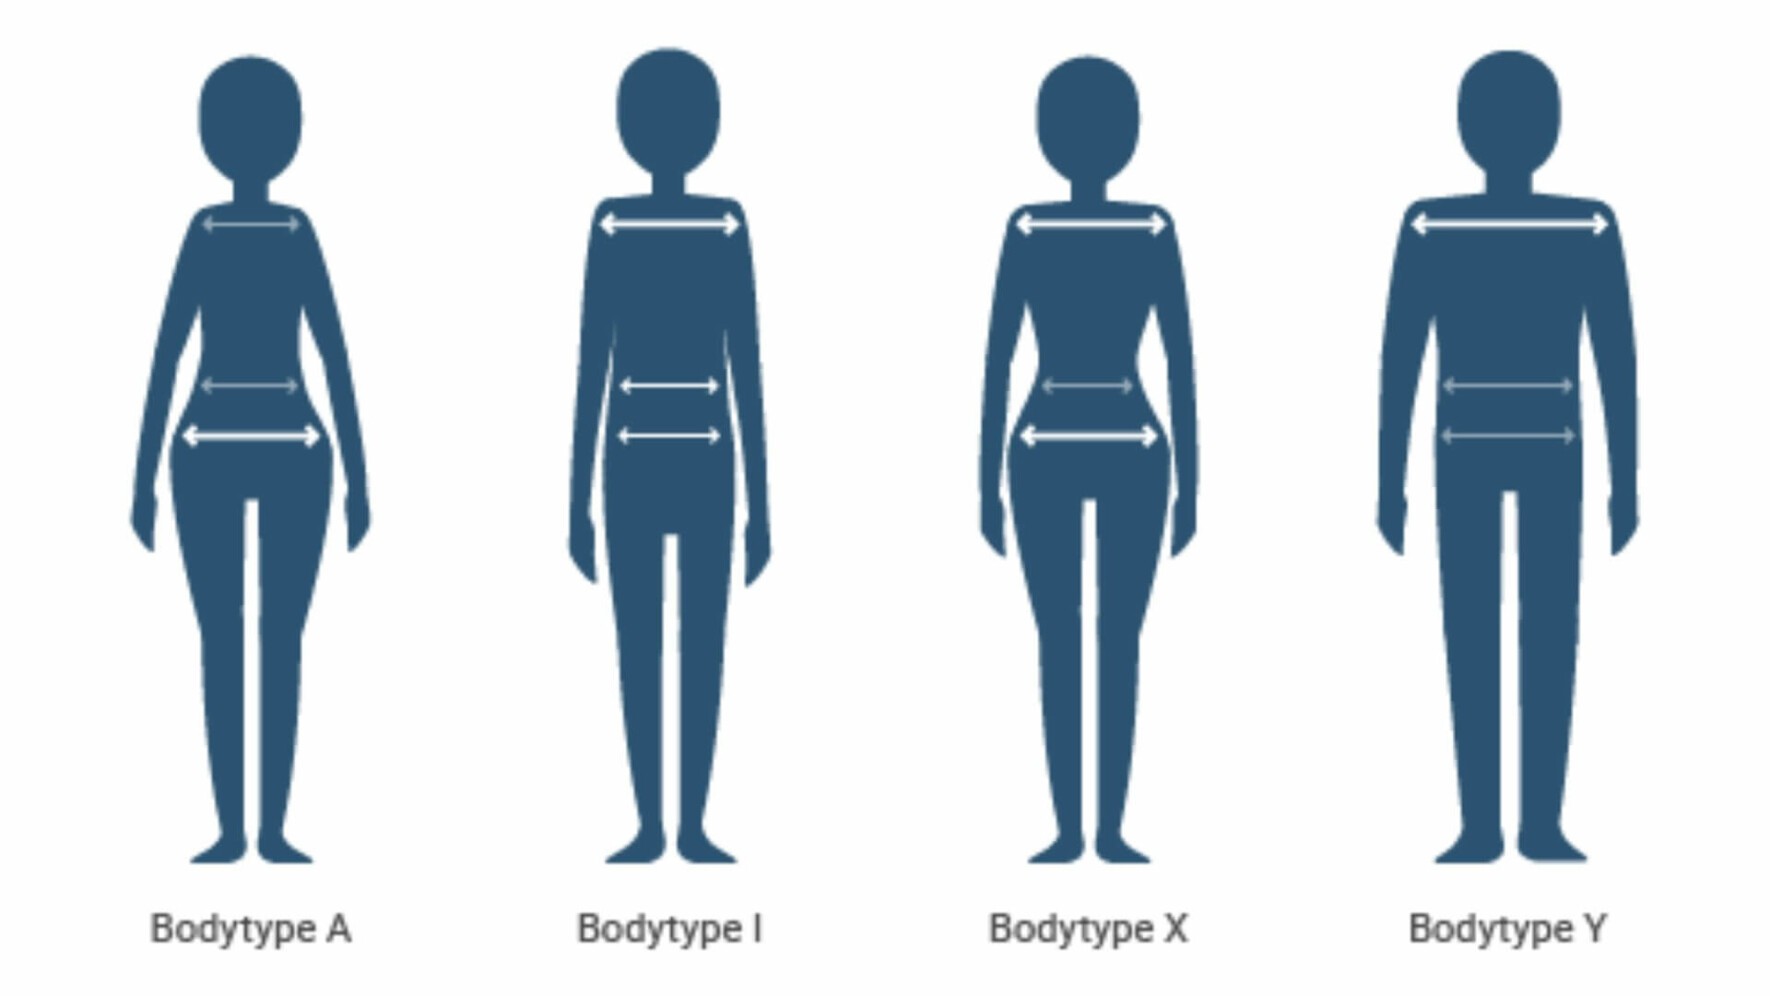 bodytypes in pocketvering matras